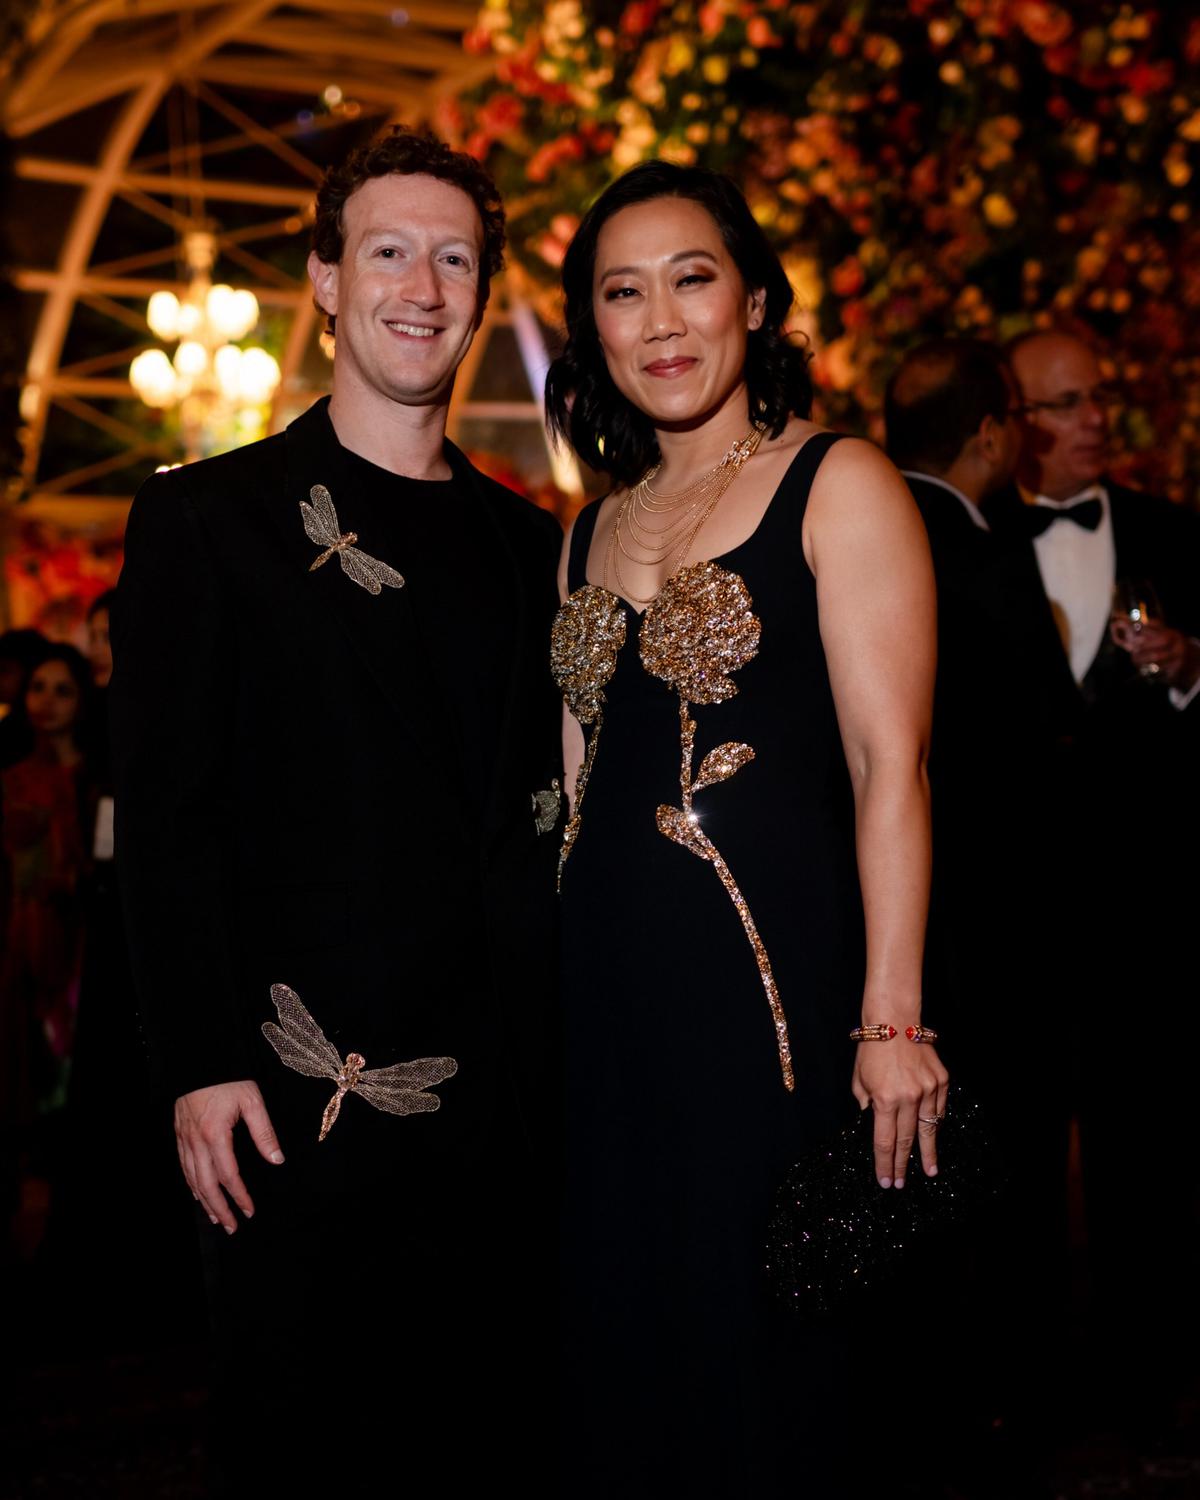 Le PDG de Meta, Mark Zuckerberg, et son épouse, la philanthrope Priscilla Chan, assistent à la fête pré-mariage d'Anant Ambani et Radhika Marchant à Jamnagar.